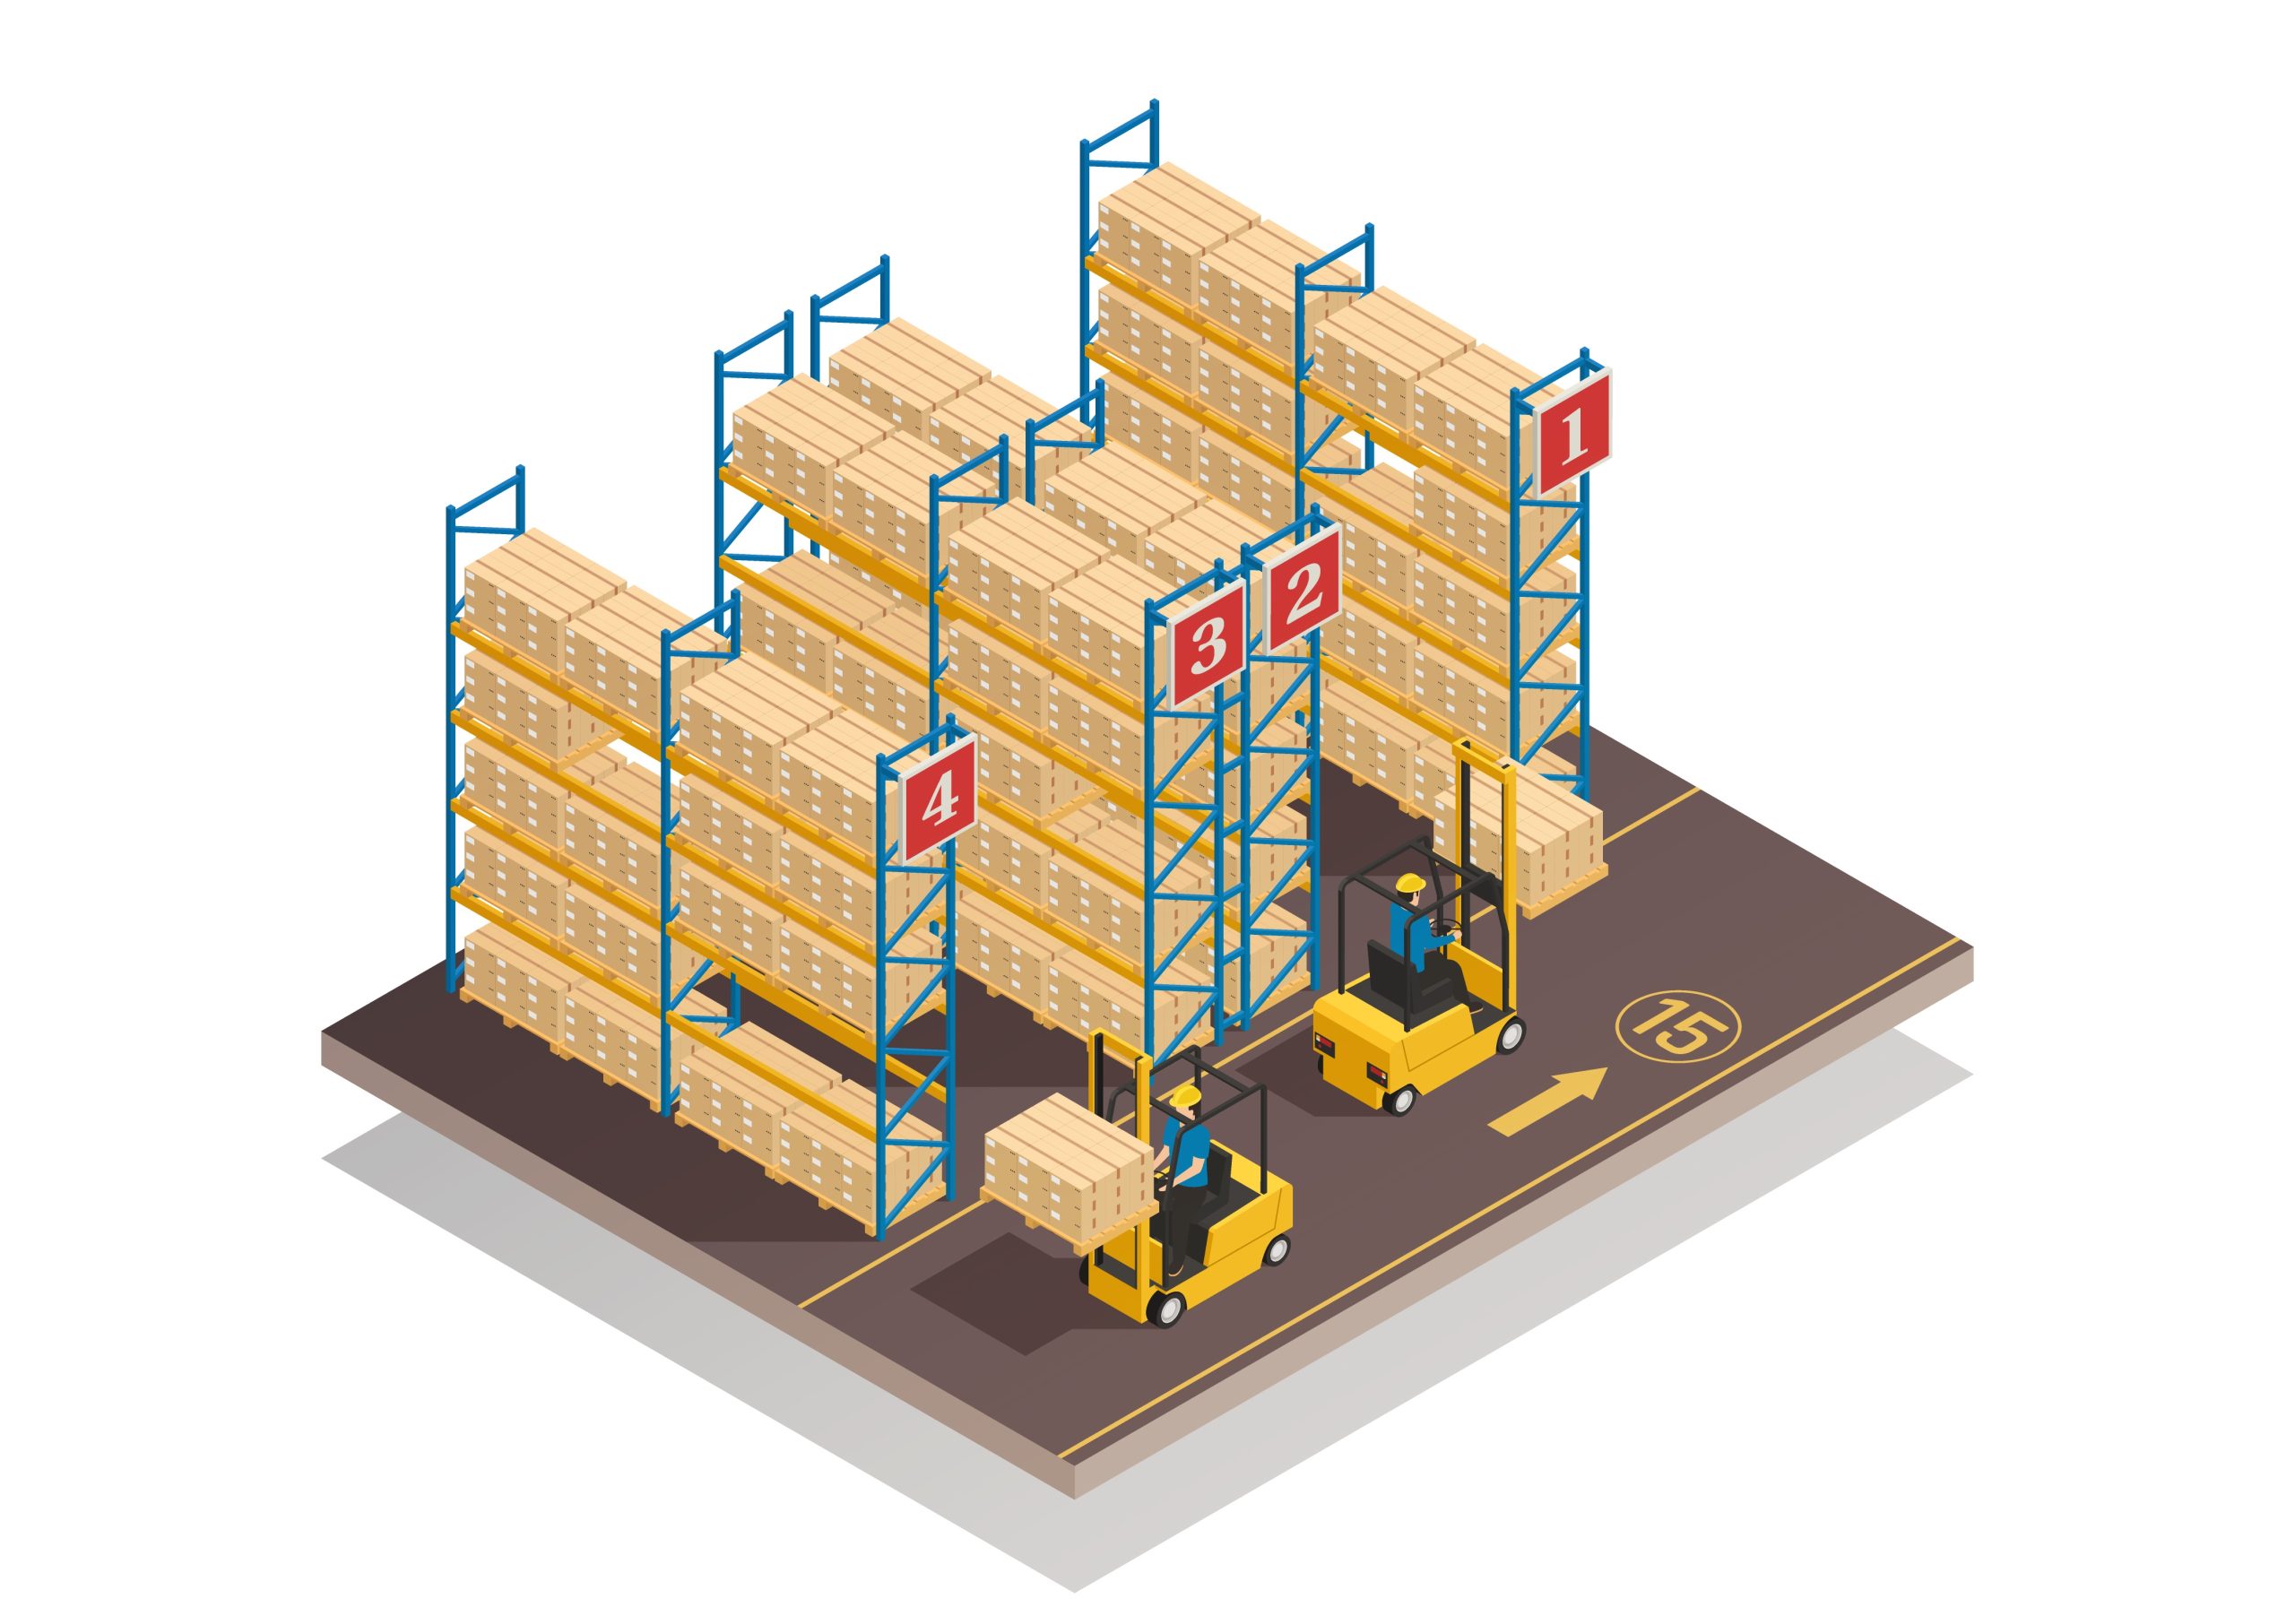 Ilustração de um armazém com racks e caixas empilhadas, além de duas empilhadeiras amarelas.